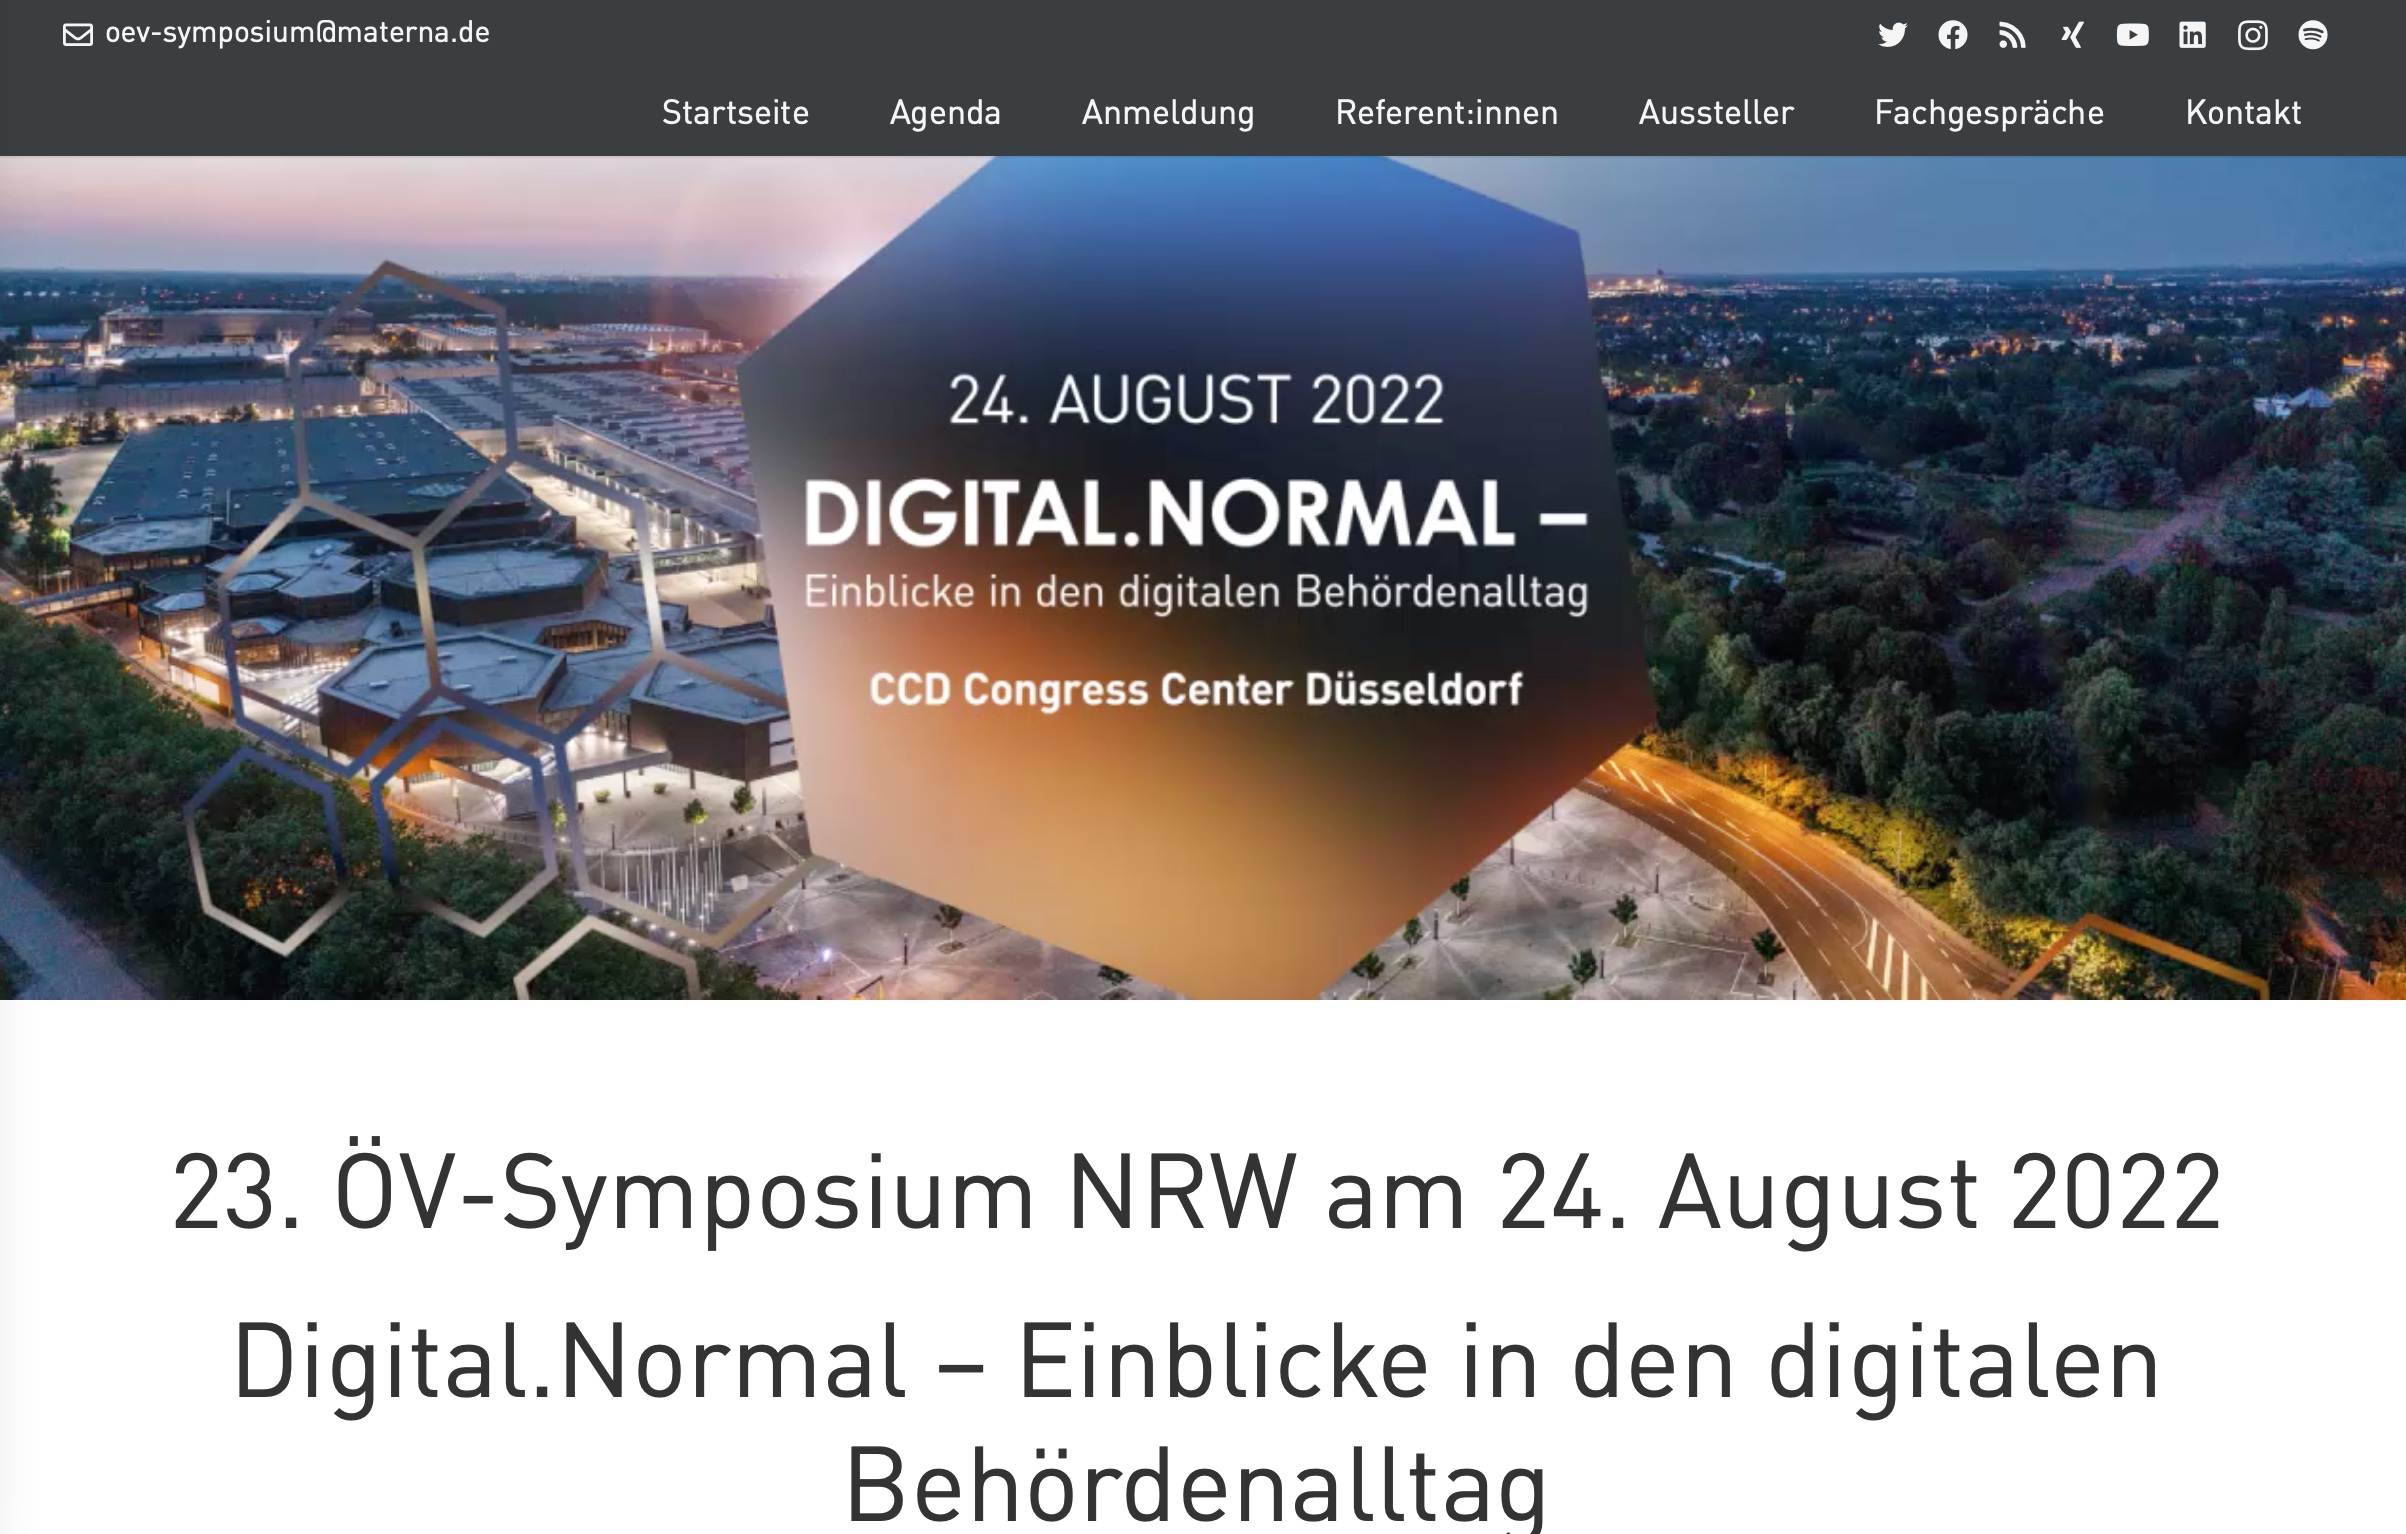 Das ÖV-Symposium NRW findet im Congress Center Düsseldorf statt.